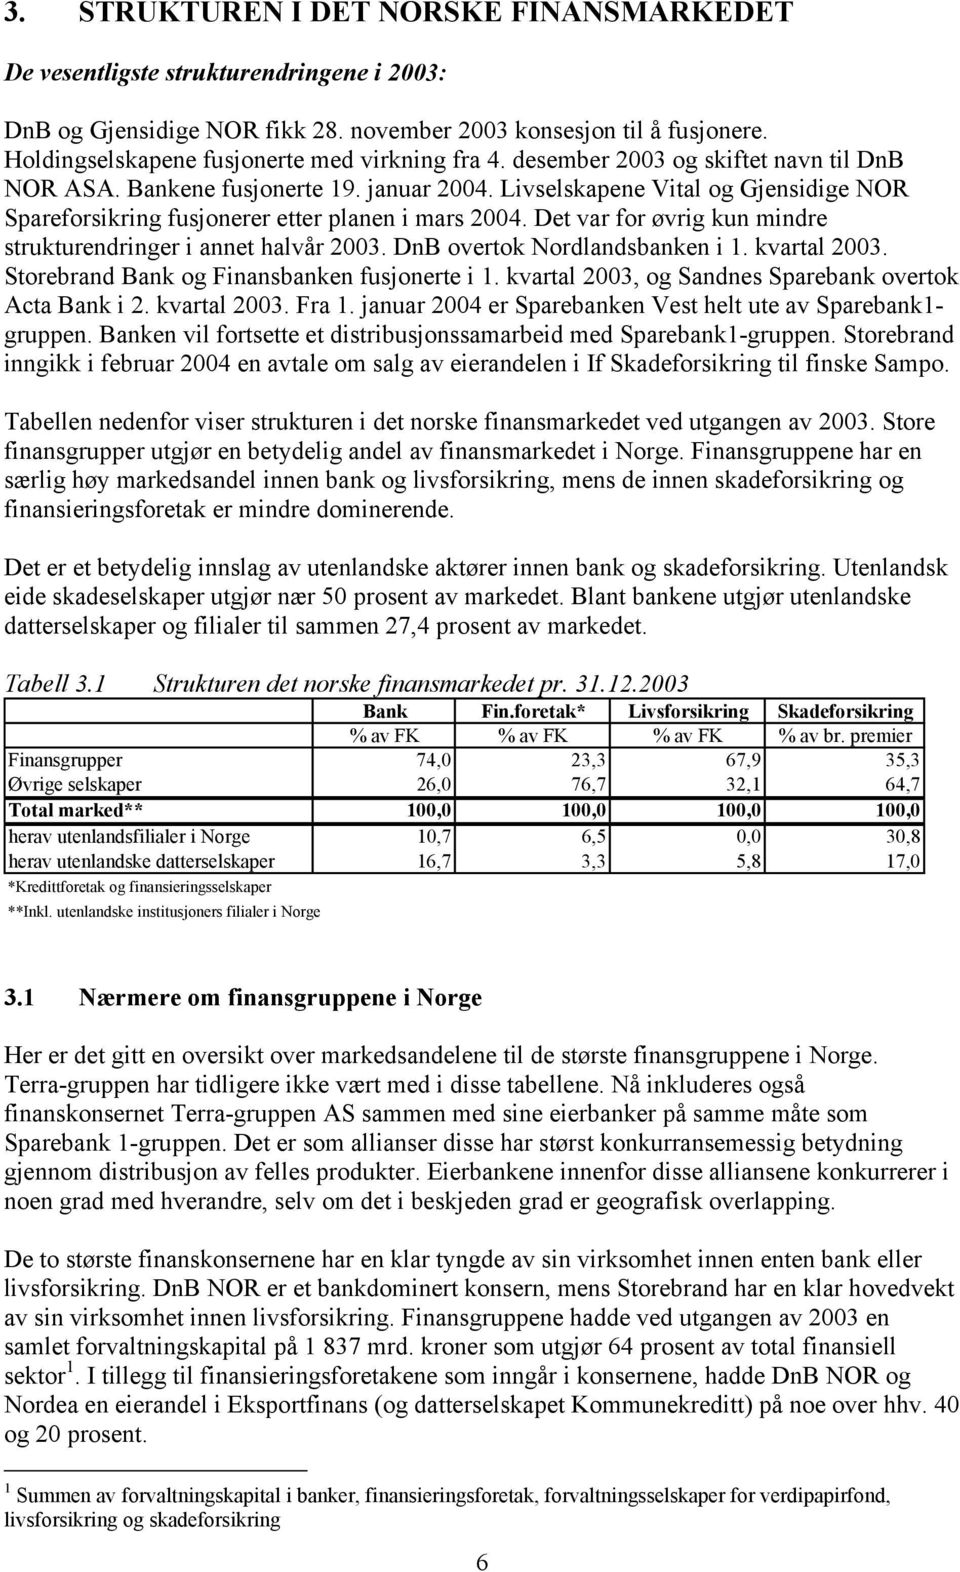 Livselskapene Vital og Gjensidige NOR Spareforsikring fusjonerer etter planen i mars 2004. Det var for øvrig kun mindre strukturendringer i annet halvår 2003. DnB overtok Nordlandsbanken i 1.